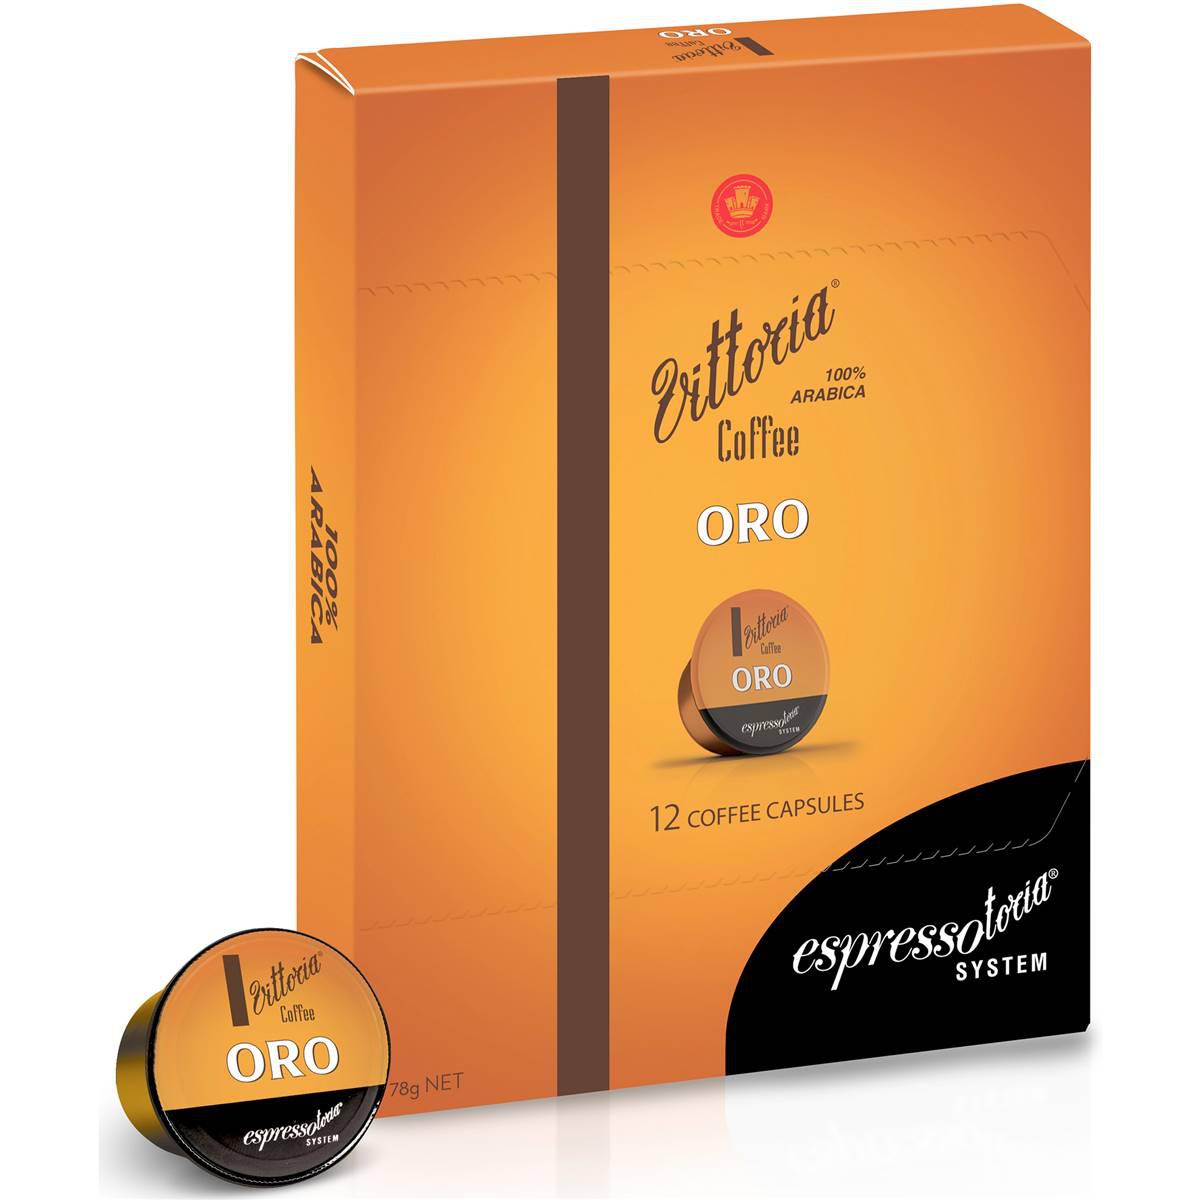 Vittoria Espressotoria Oro Coffee Capsules 12 Pack